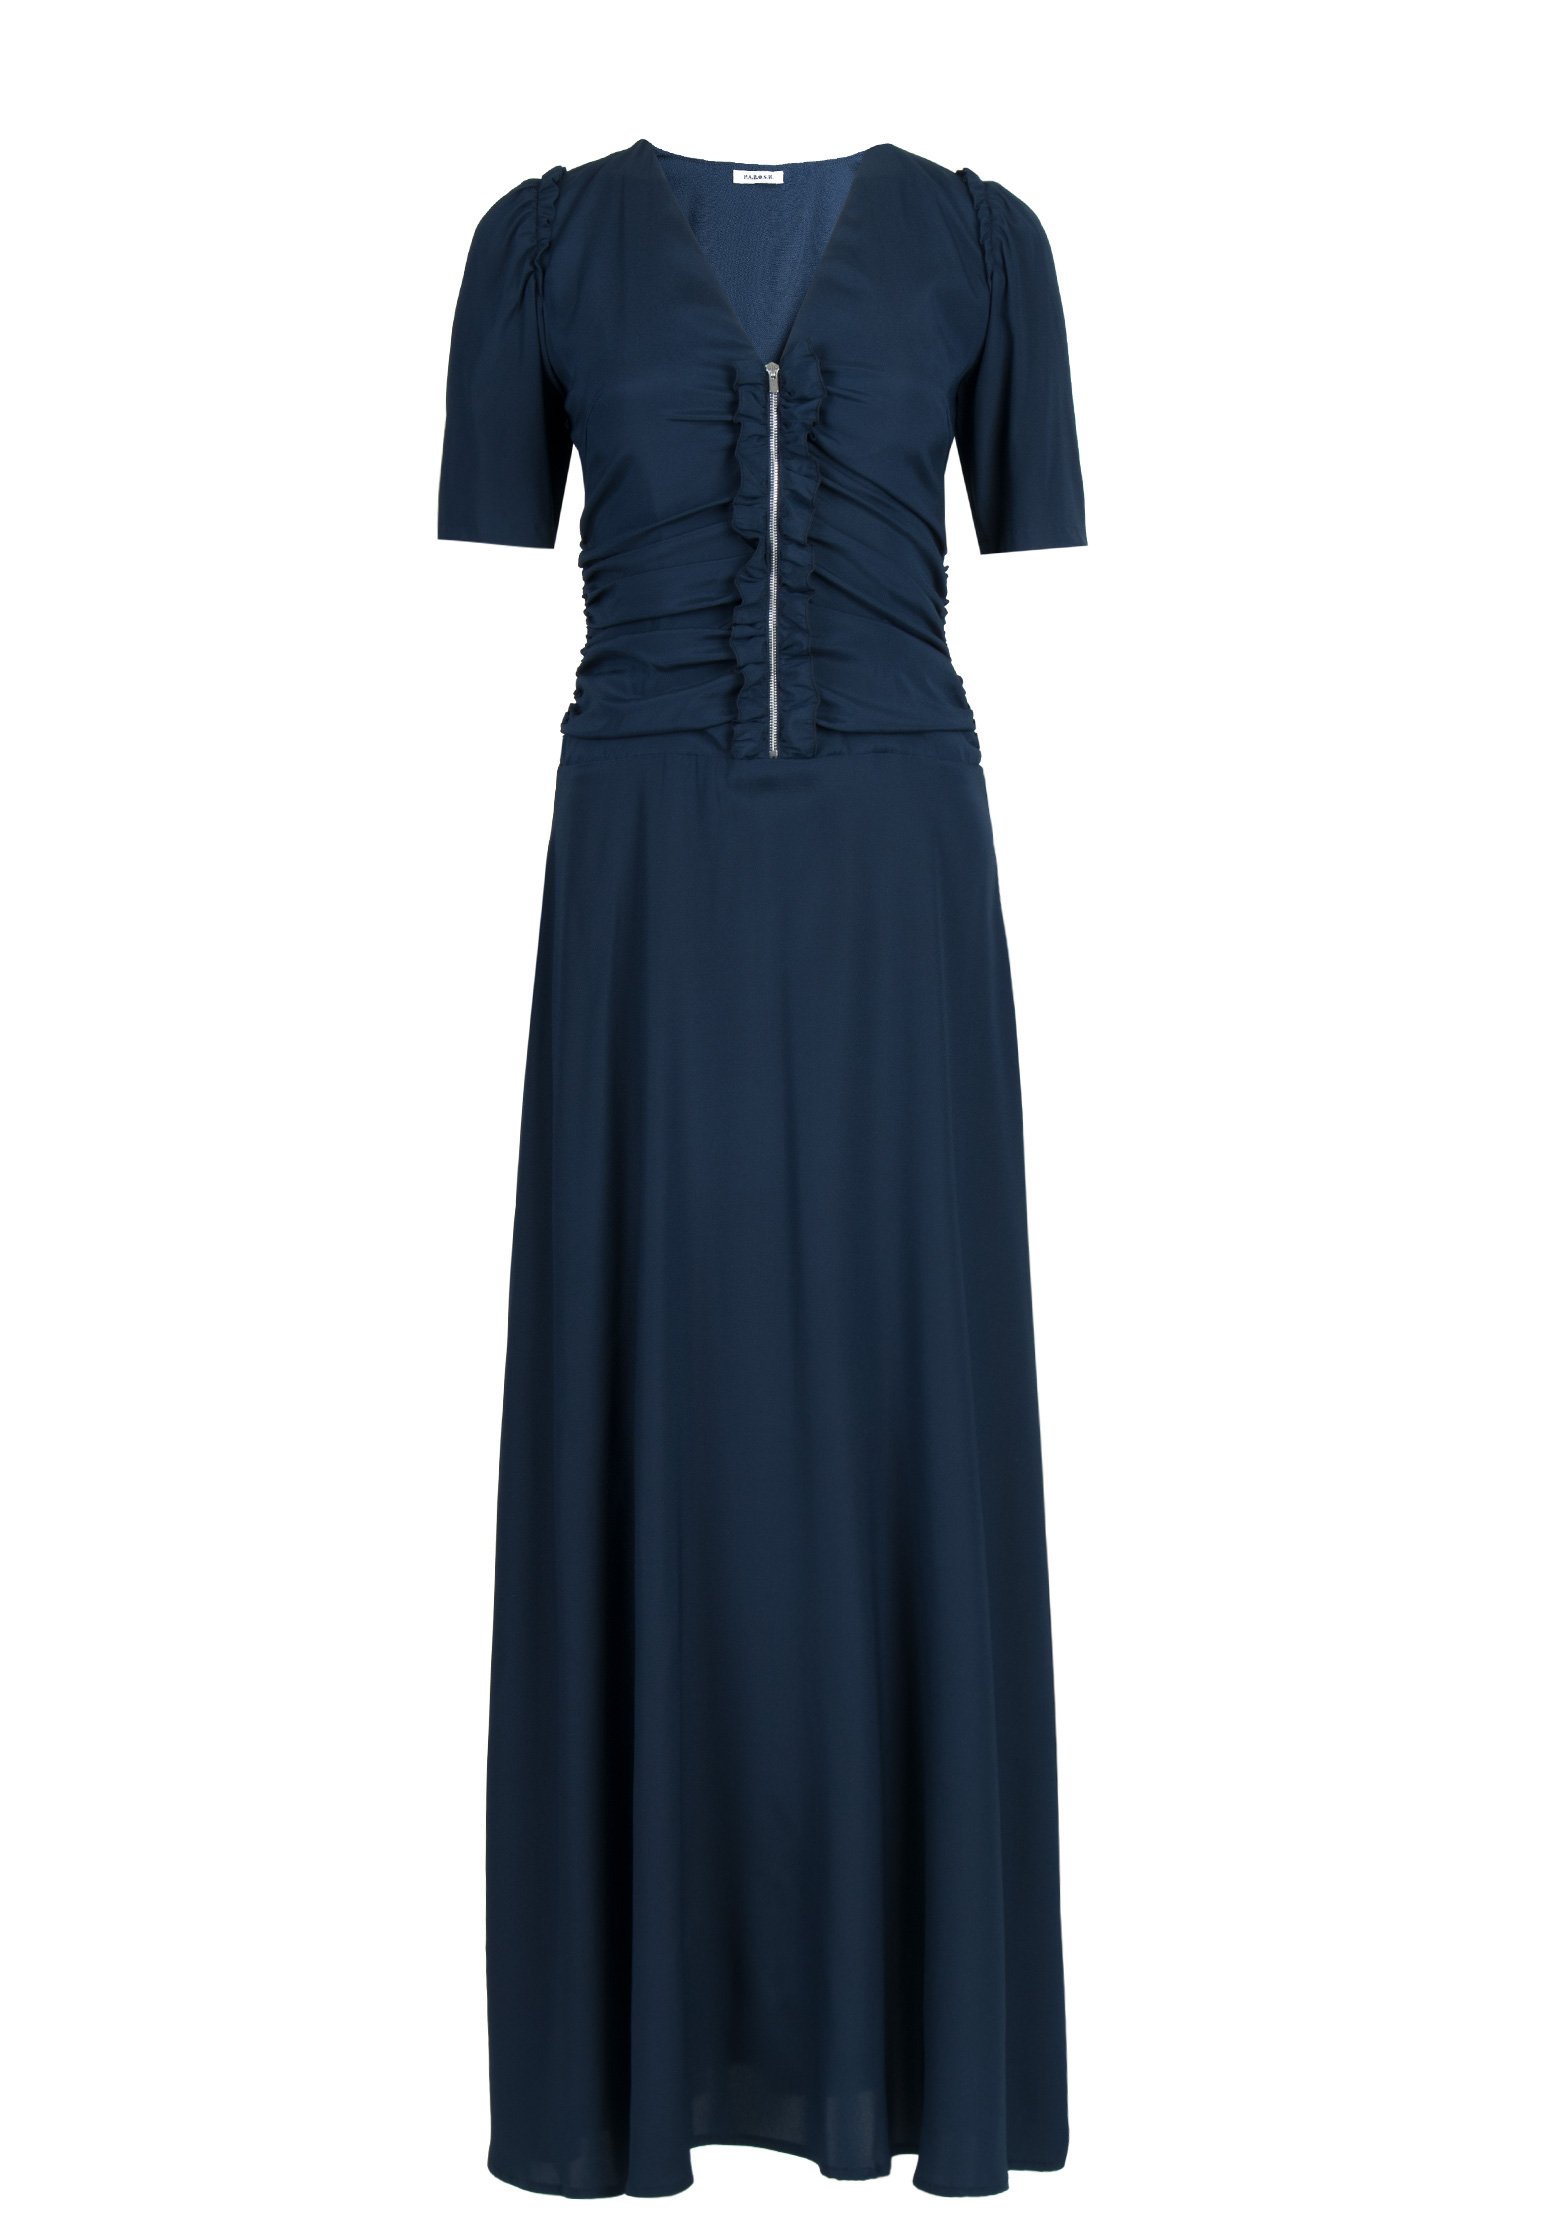 Платье женское P.A.R.O.S.H. 113152 синее XS